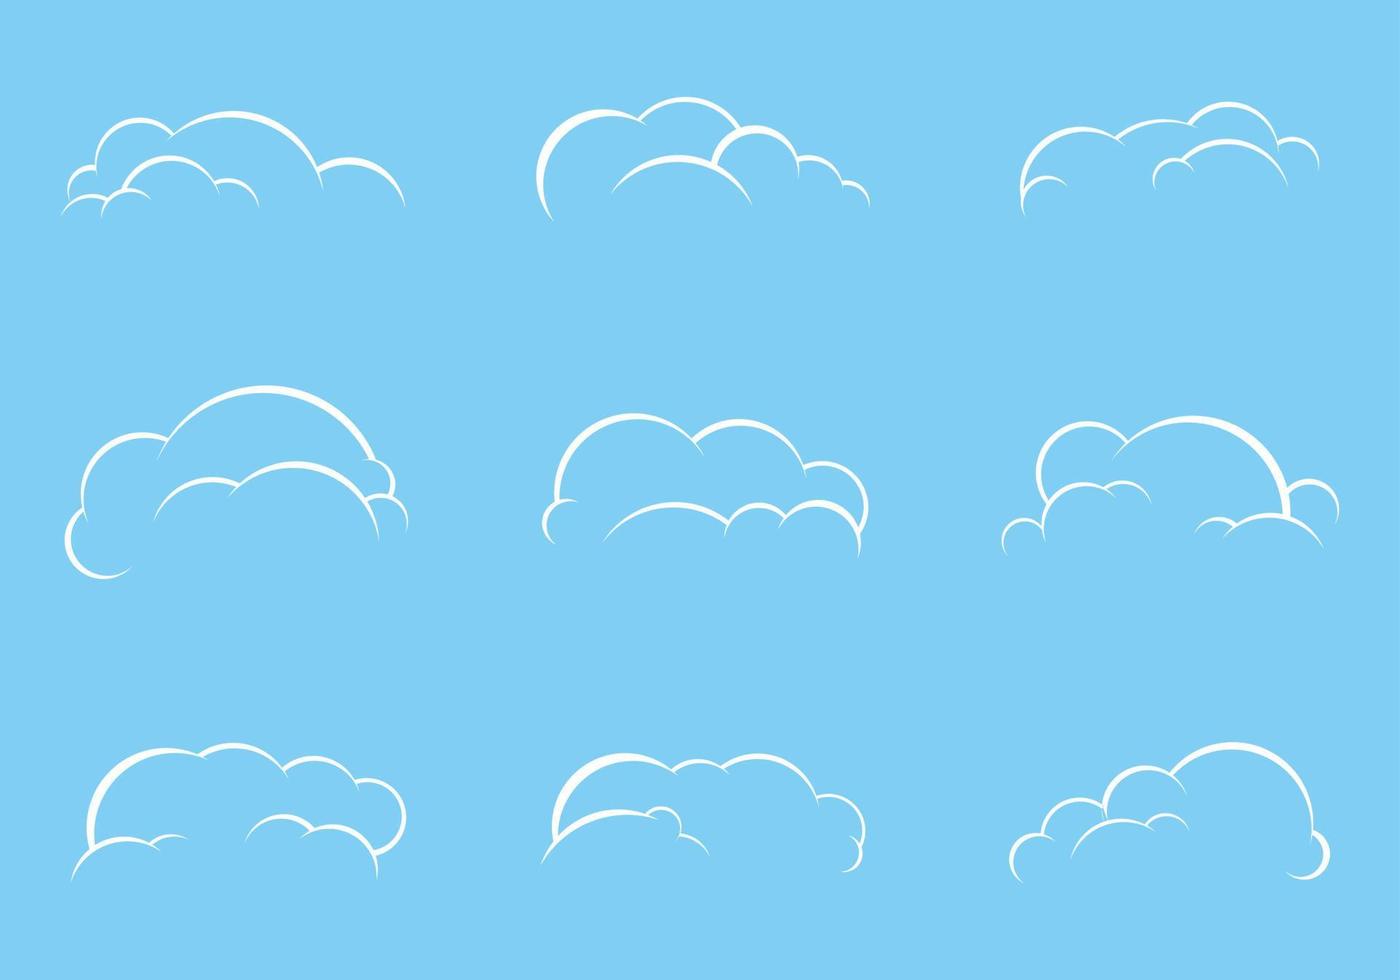 set di illustrazione vettoriale nuvola